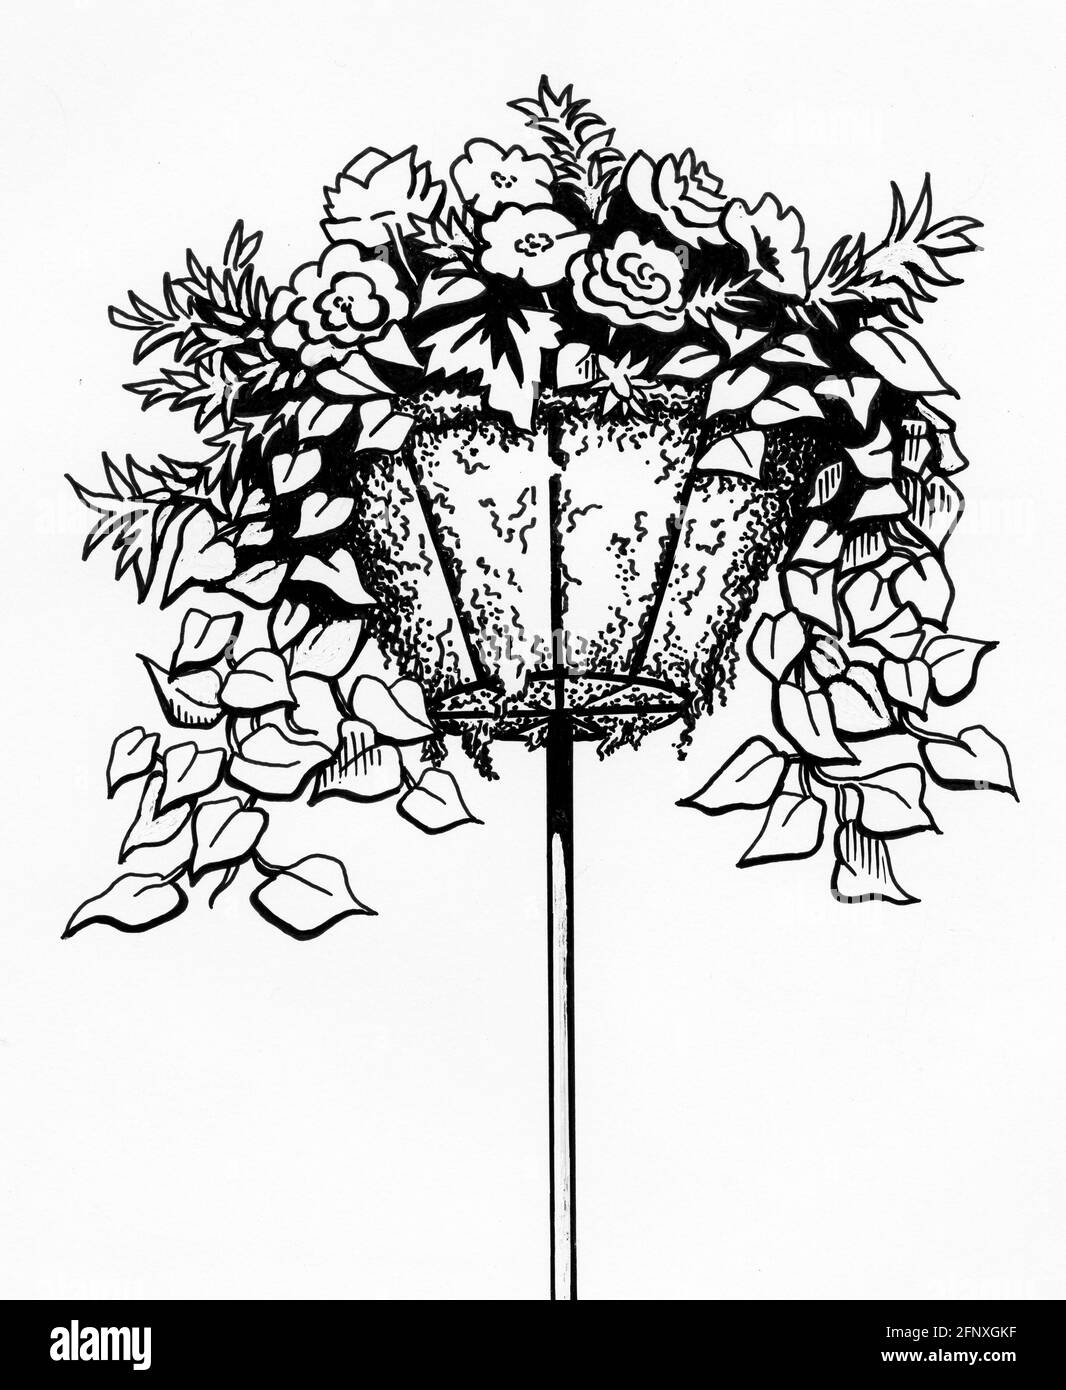 Dessin d'un panier complet sur un support avec un sac de mousse de sphagnum et des plantes à fleurs Banque D'Images